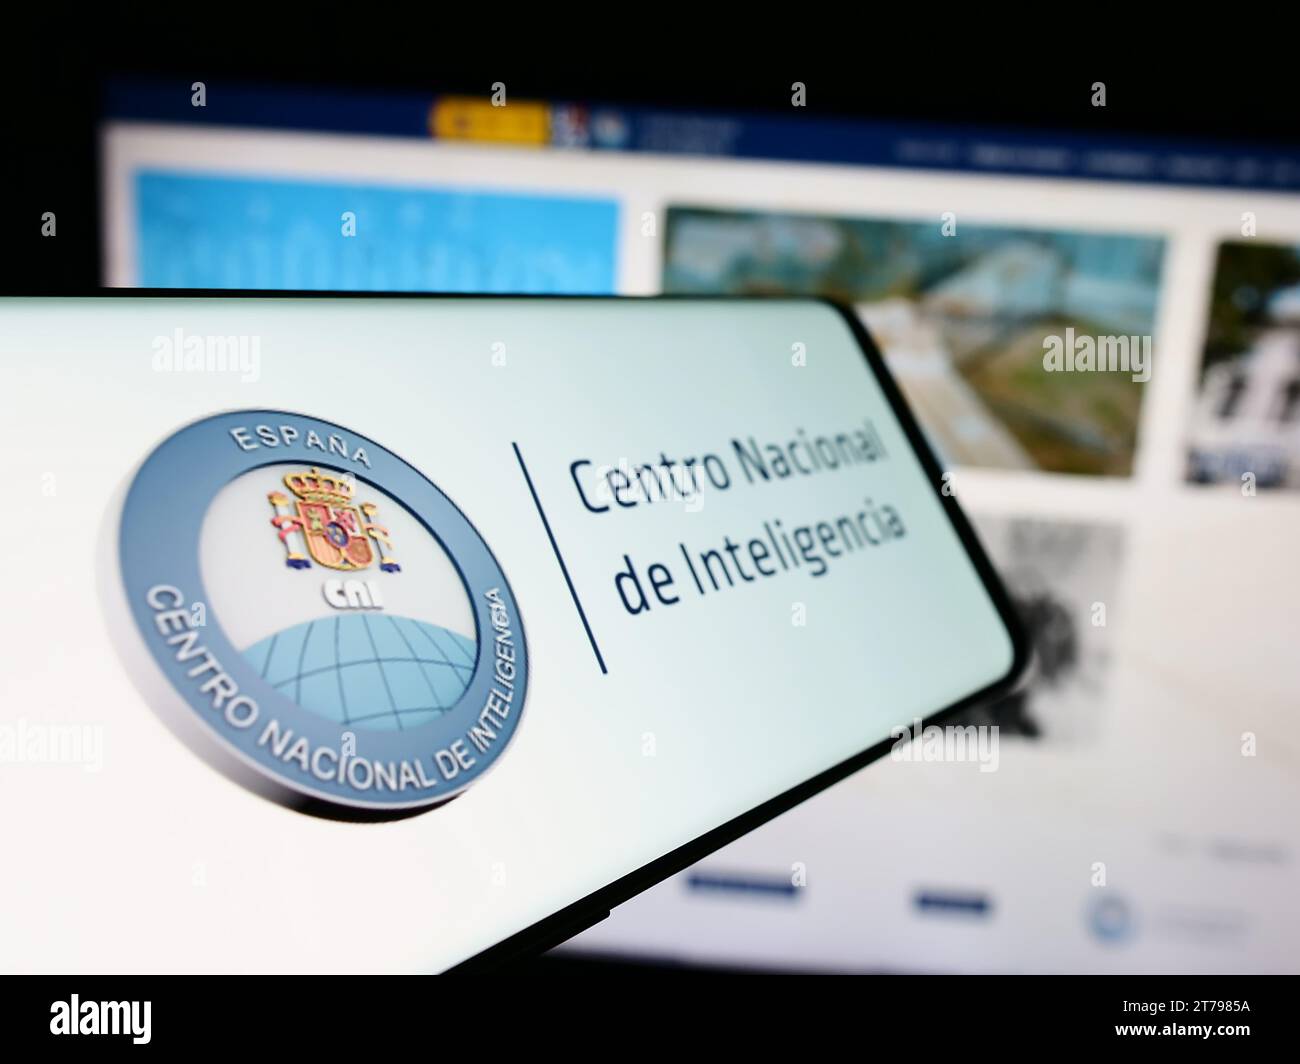 Cellulare con logo dell'agenzia di intelligence Centro Nacional de Inteligencia (CNI) davanti al sito web. Mettere a fuoco il display centrale sinistro del telefono. Foto Stock